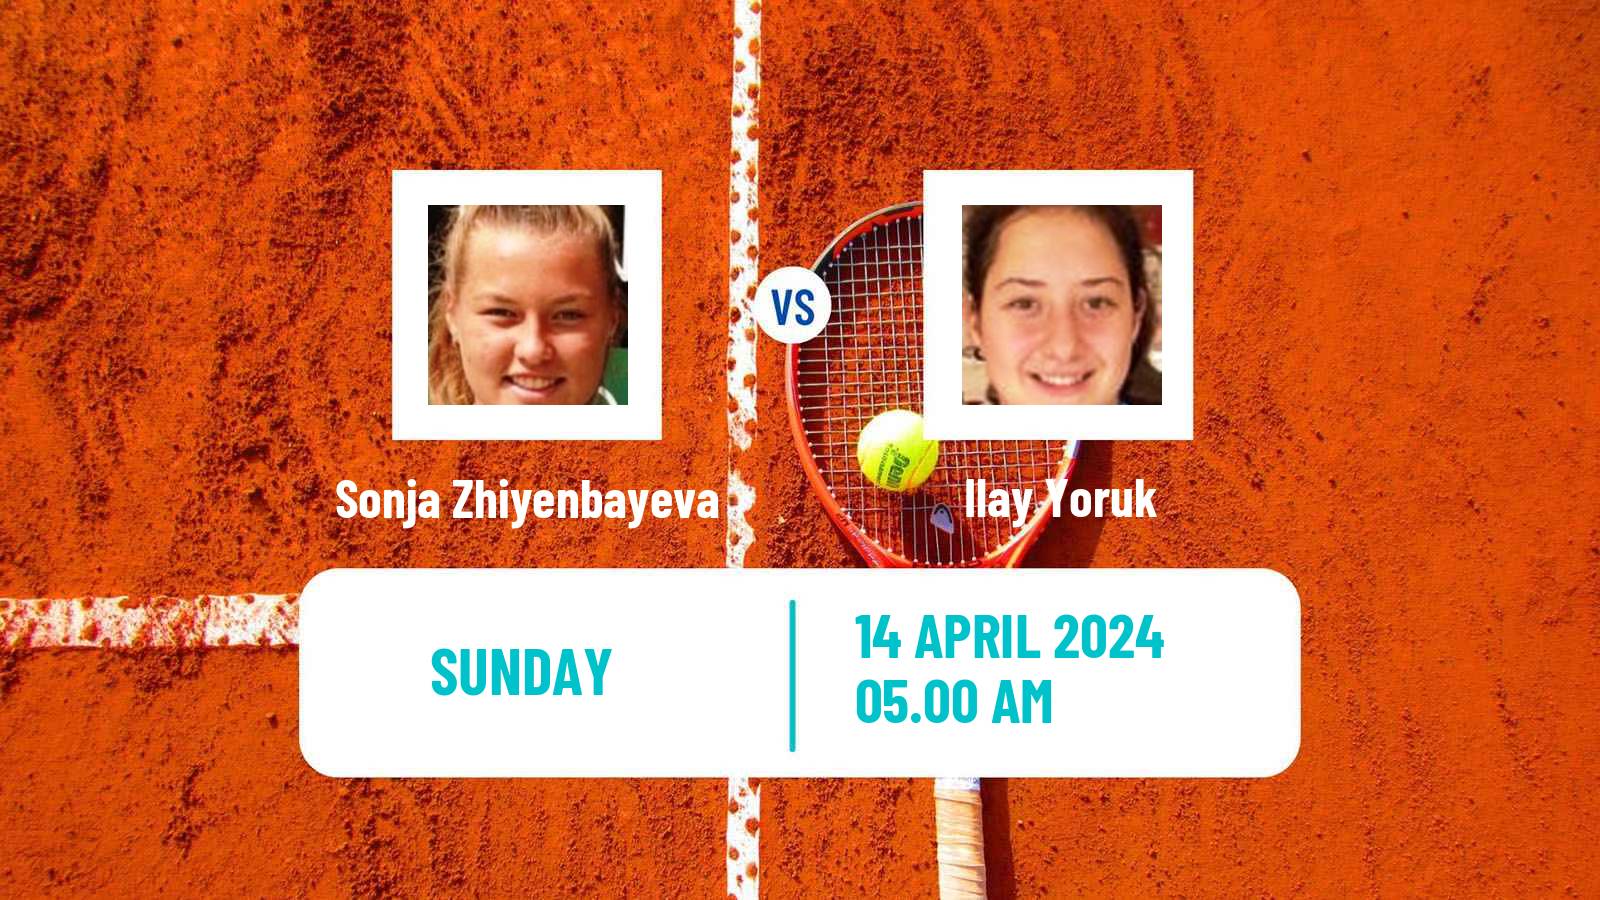 Tennis ITF W15 Antalya 9 Women Sonja Zhiyenbayeva - Ilay Yoruk